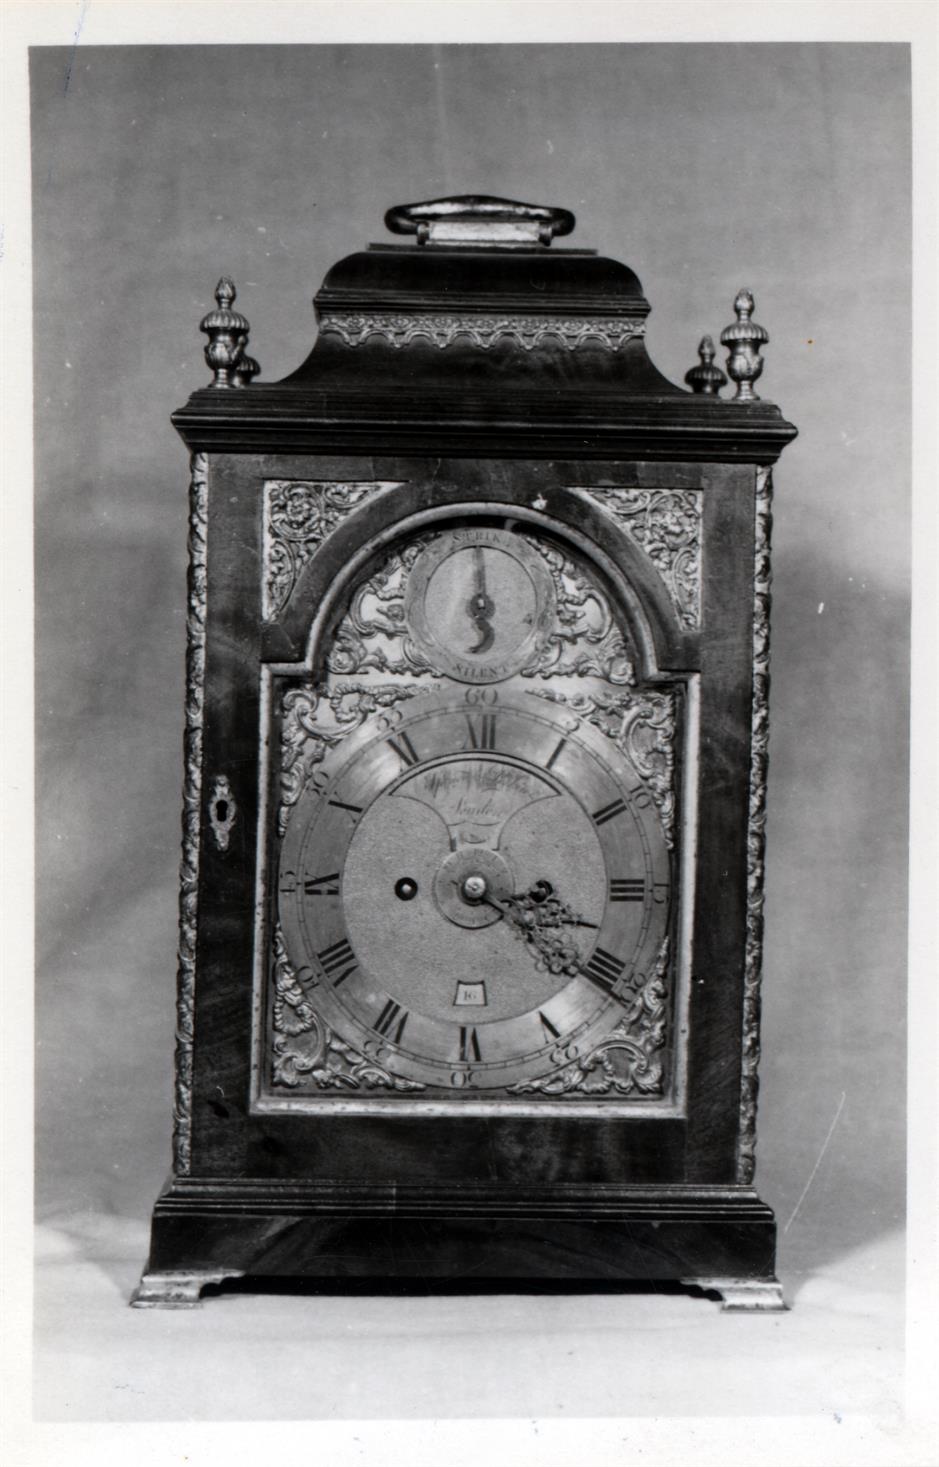 Exposição de relógios do século XVI ao XIX : relógios de caixa